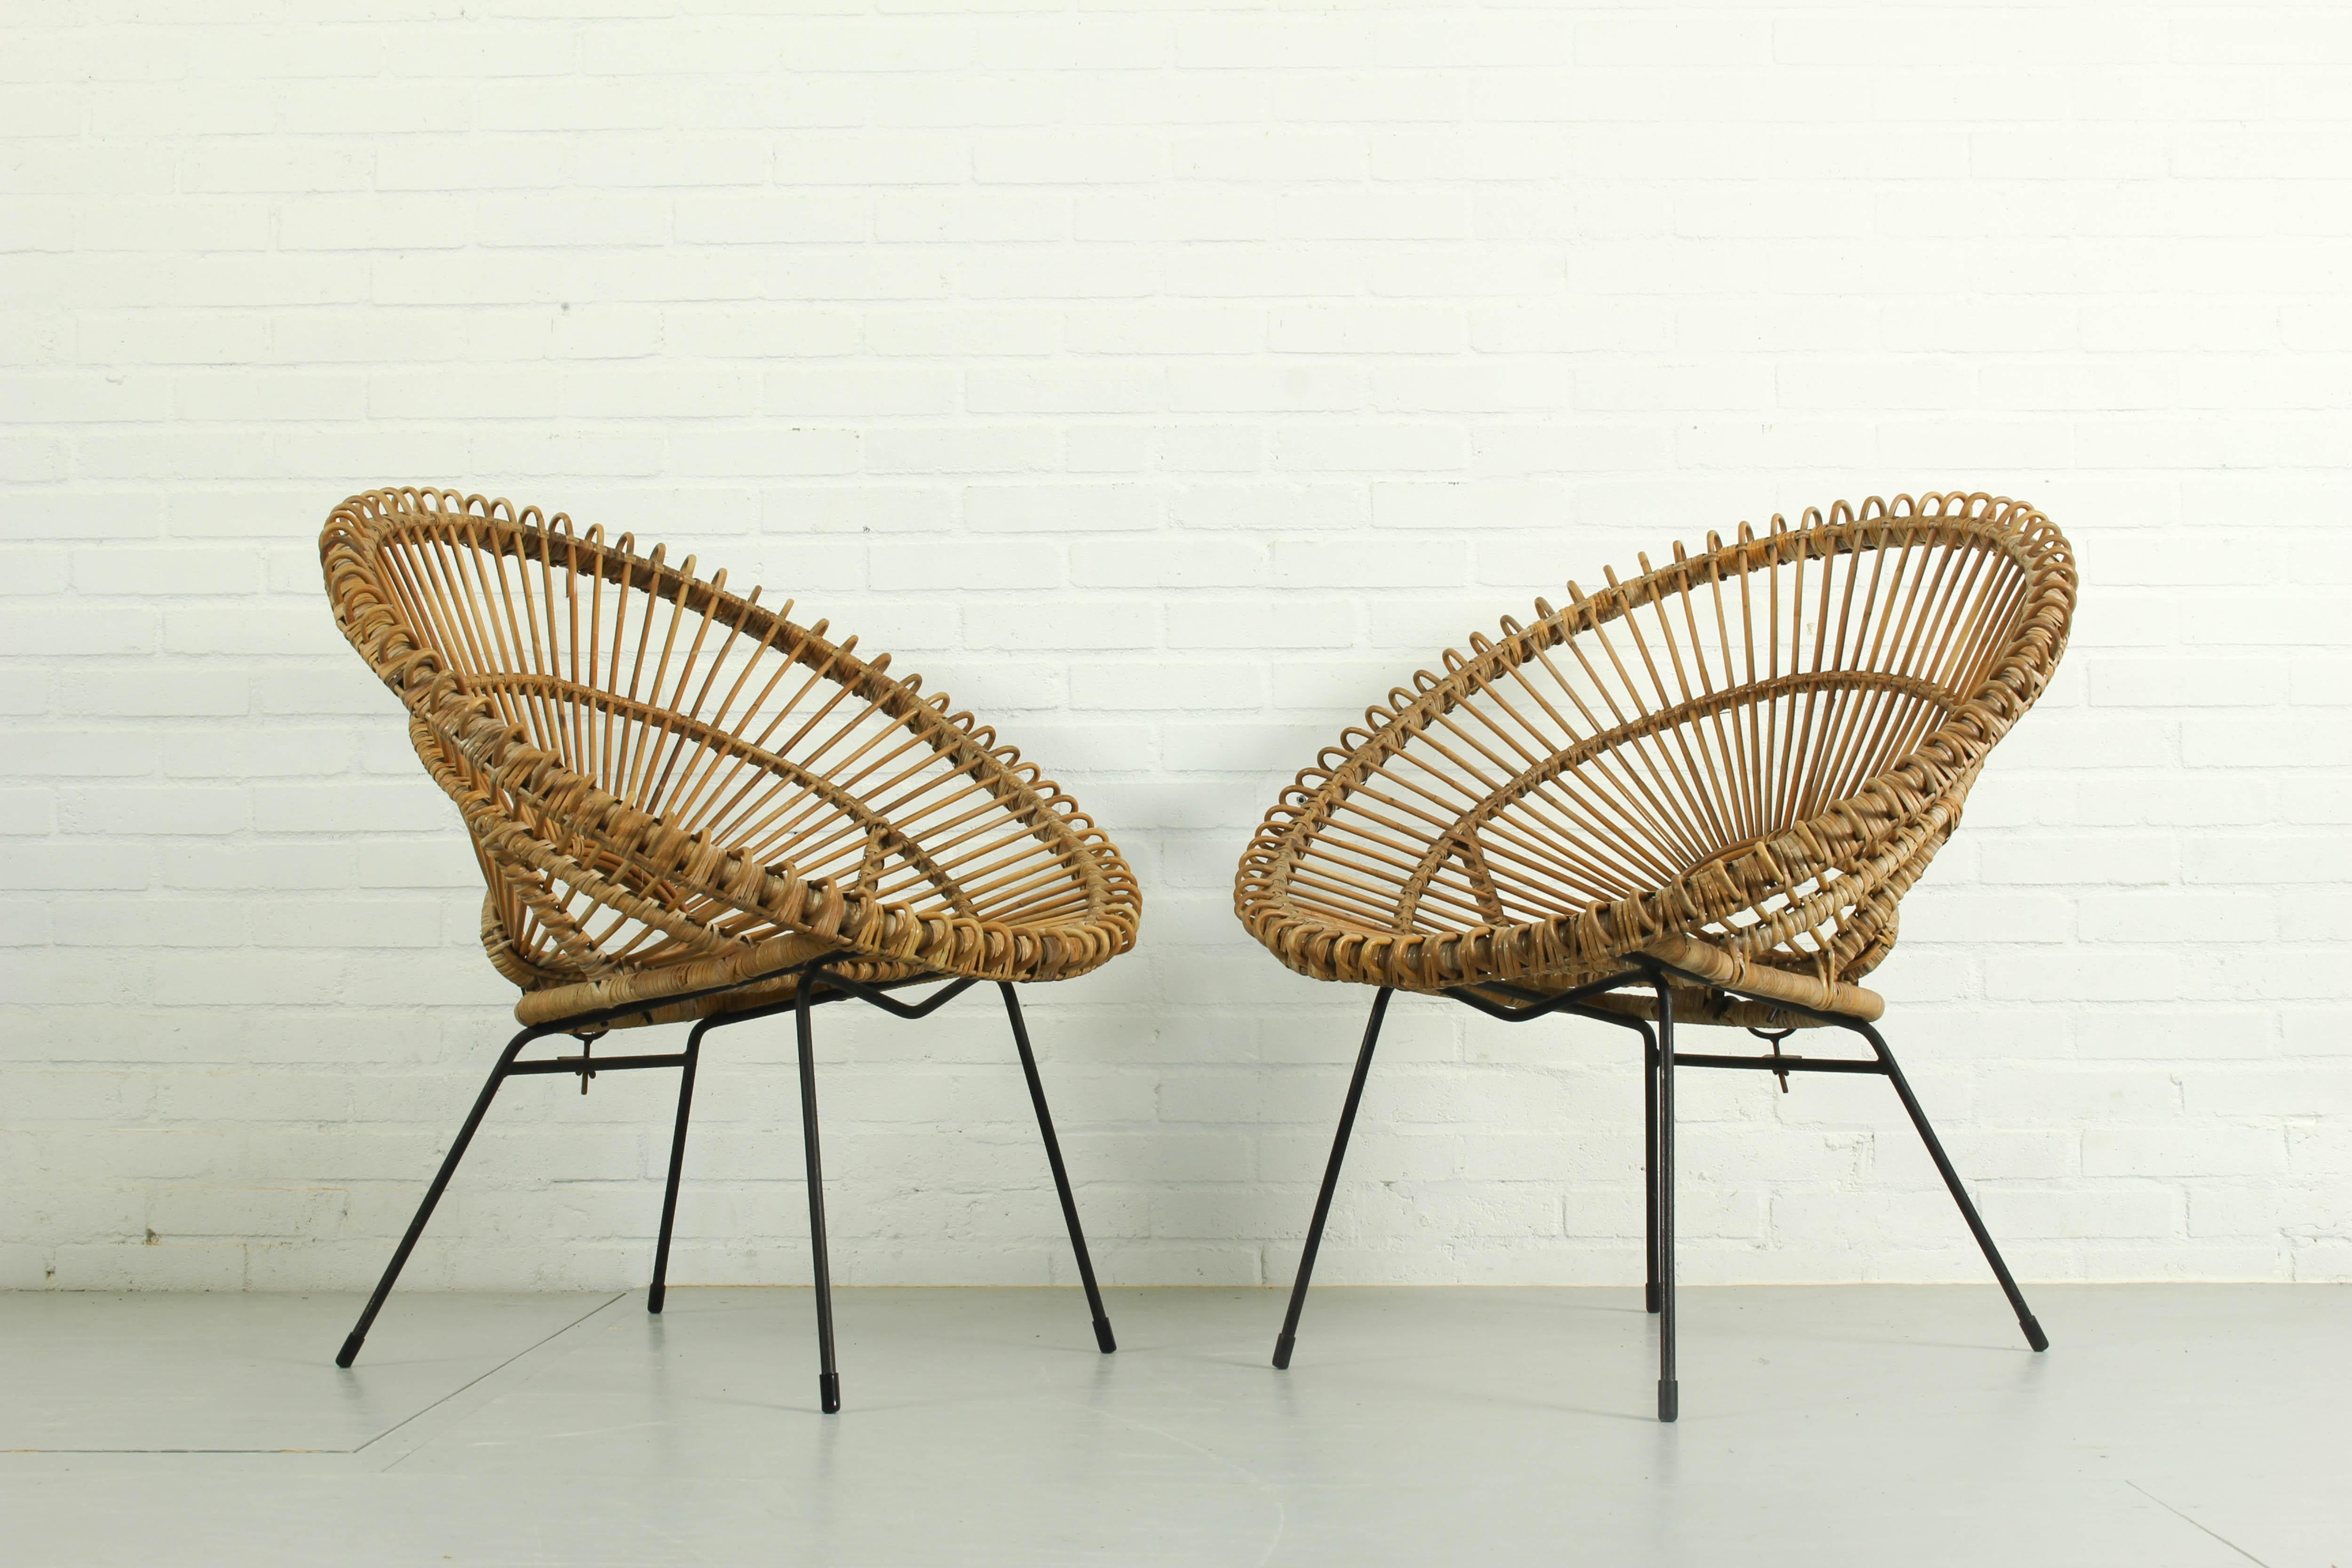 Ensemble de 2 chaises ensoleillées par Rohe Noordwolde, années 1950. Très rare. Fabriqué par Rohe Noordwolde aux Pays-Bas. Les deux chaises sont en très bon état compte tenu de leur âge. 

Dimensions : 81cm h, 79cm l, 72cm p. 
